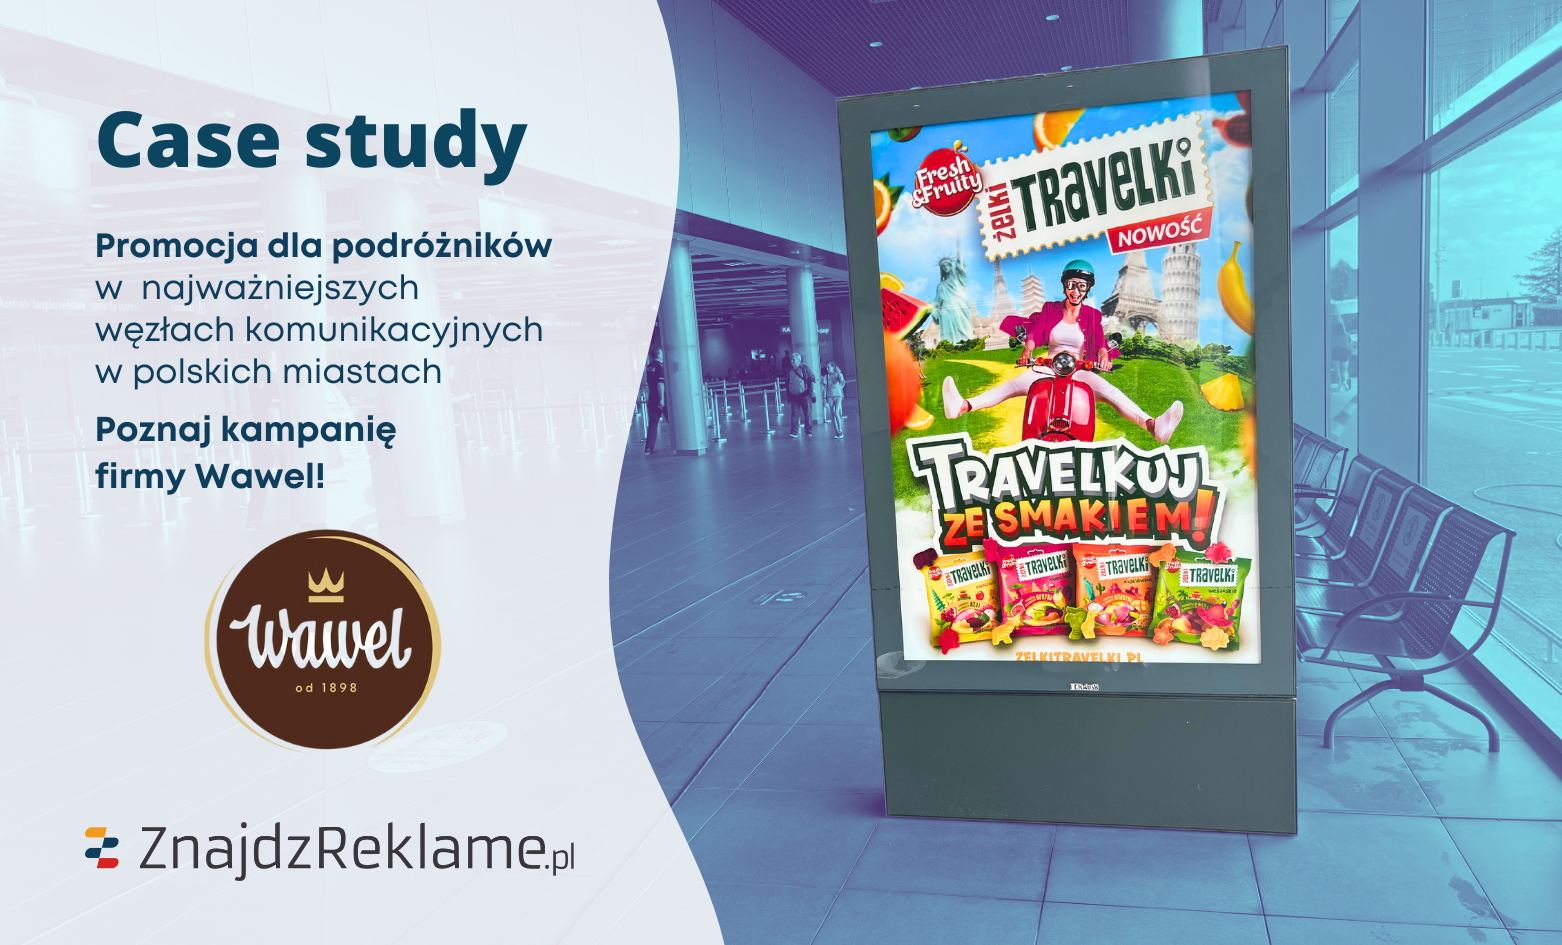 Jak firma Wawel opanowała największe dworce i lotniska w Polsce? Poznaj historię kampanii „Travelkuj ze smakiem”